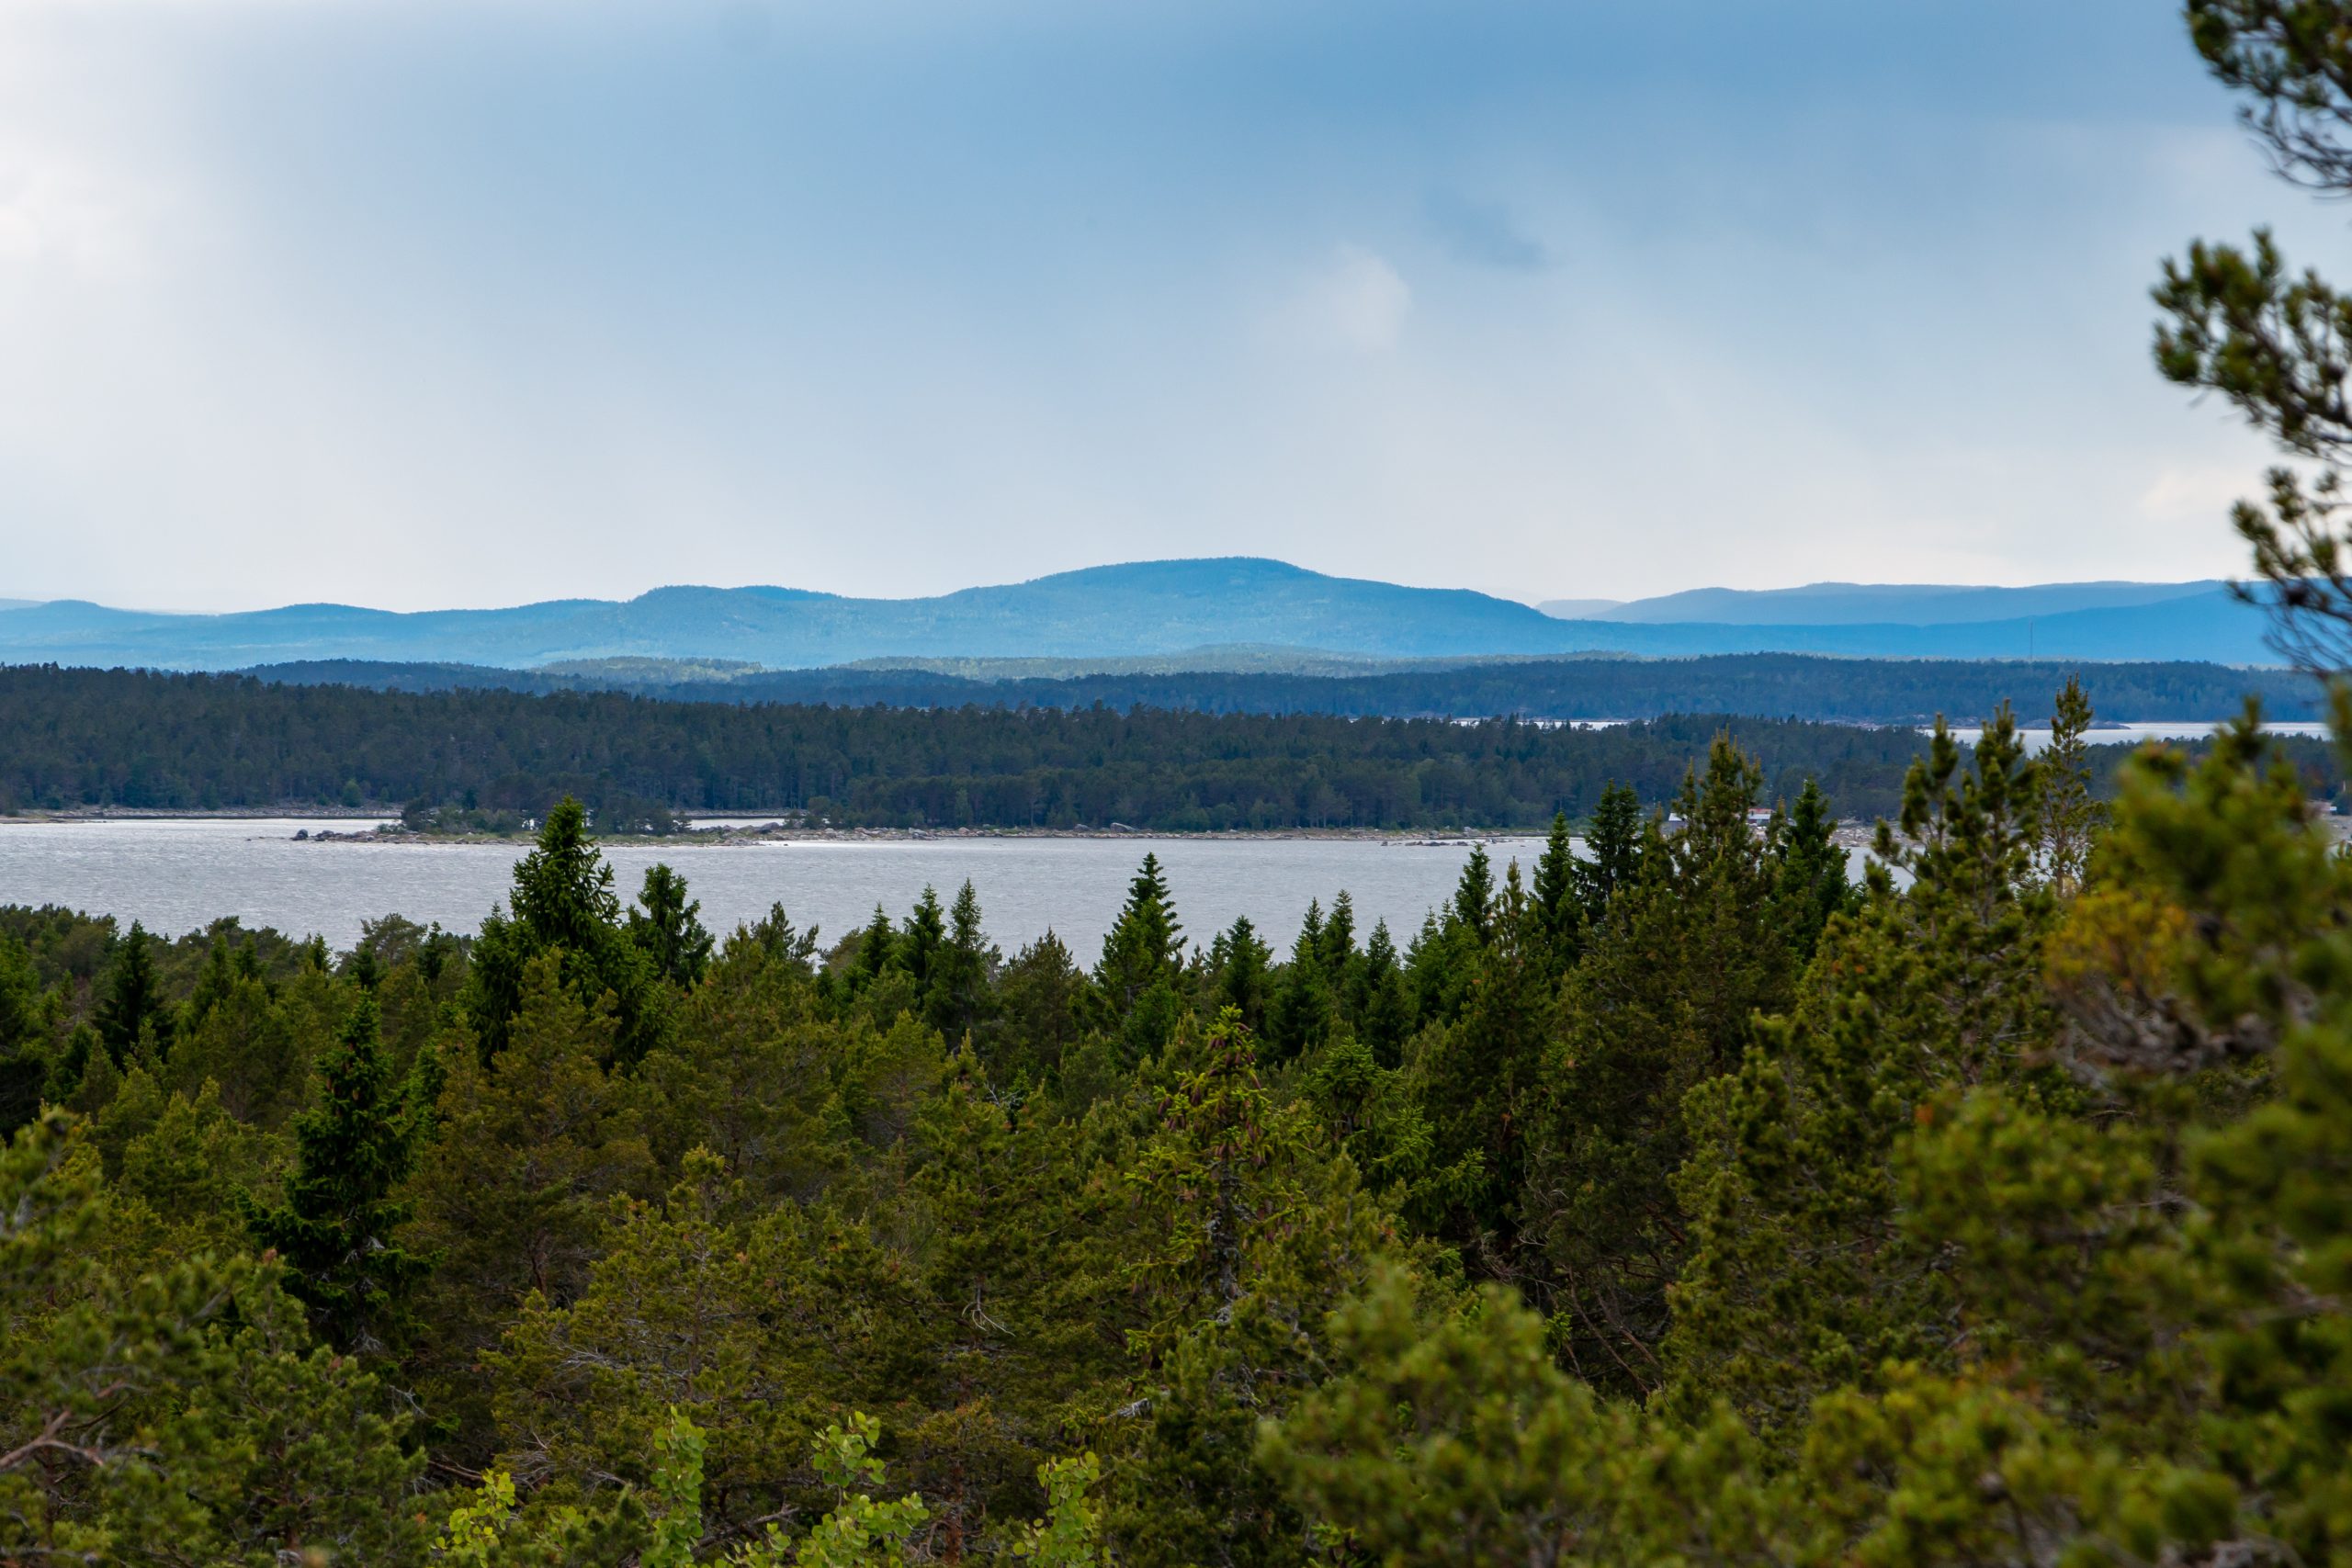 Vy över svenskt landskap med träskog, hav och bergstoppar